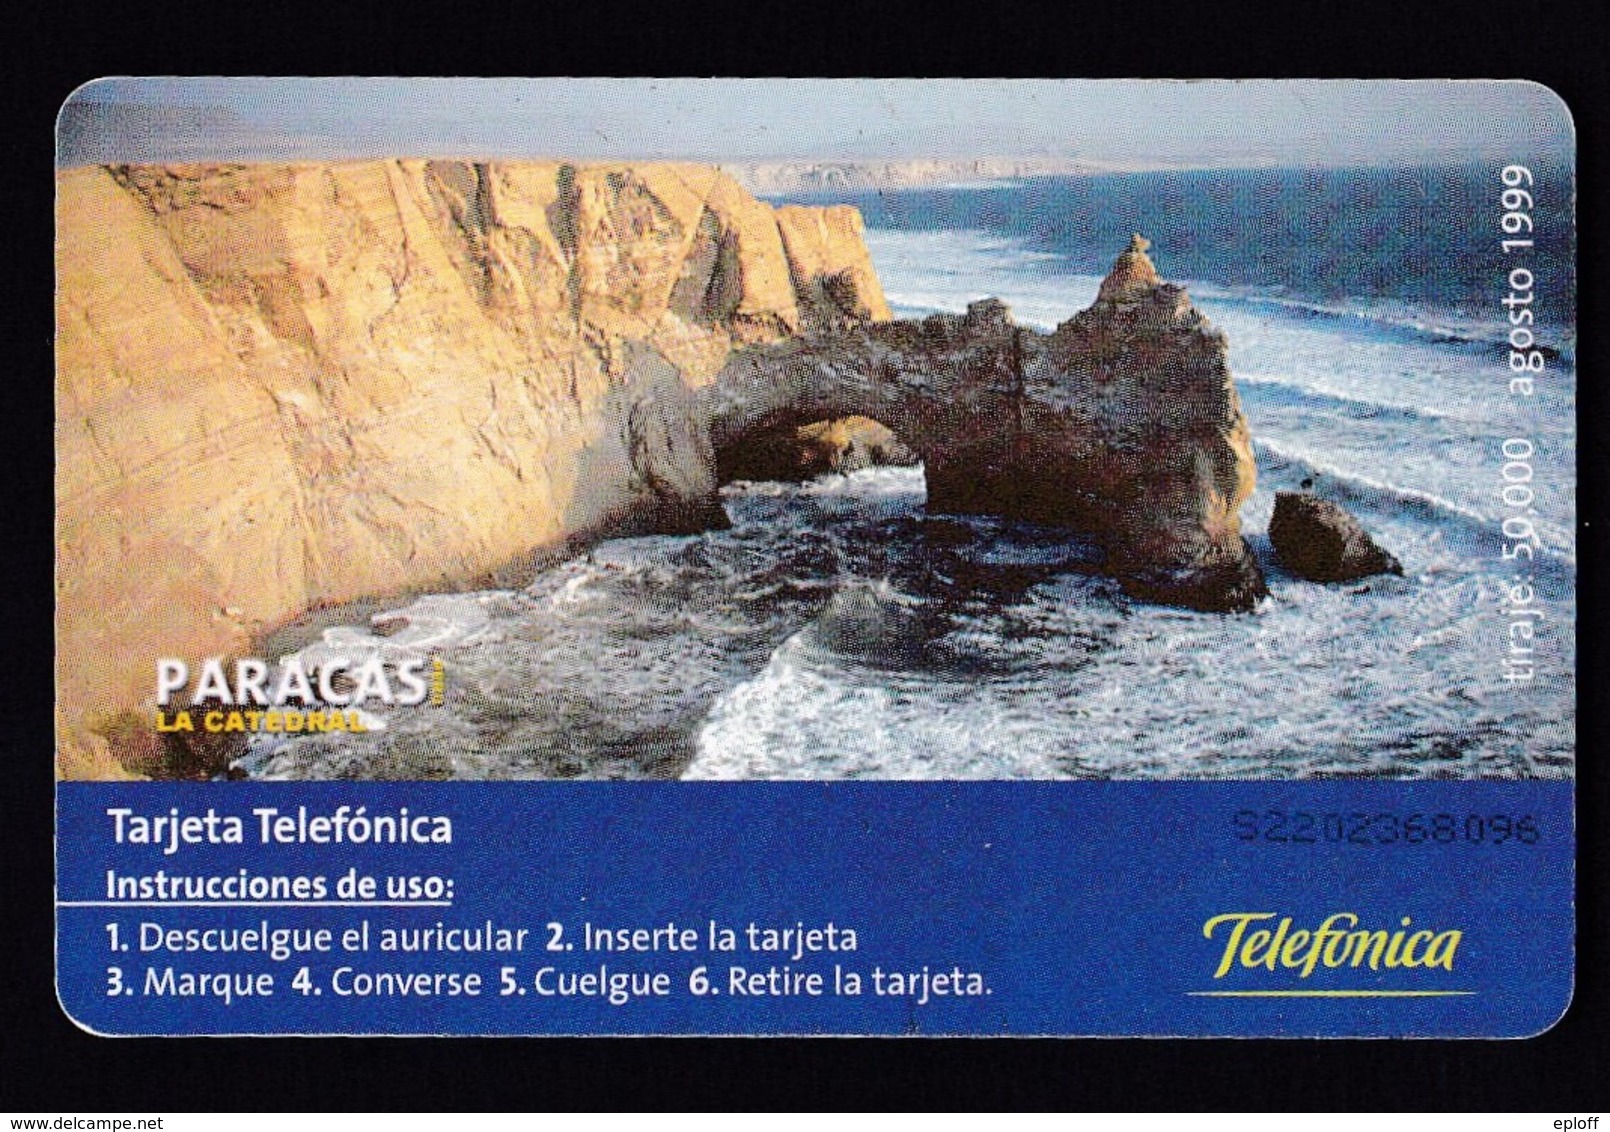 Pérou  Péru Telefonica   Télécarte à Puce    "Paracas Zarcillos"  "la Catédral" De 08.1999   Tirage 50 000 Exemplaires - Pérou